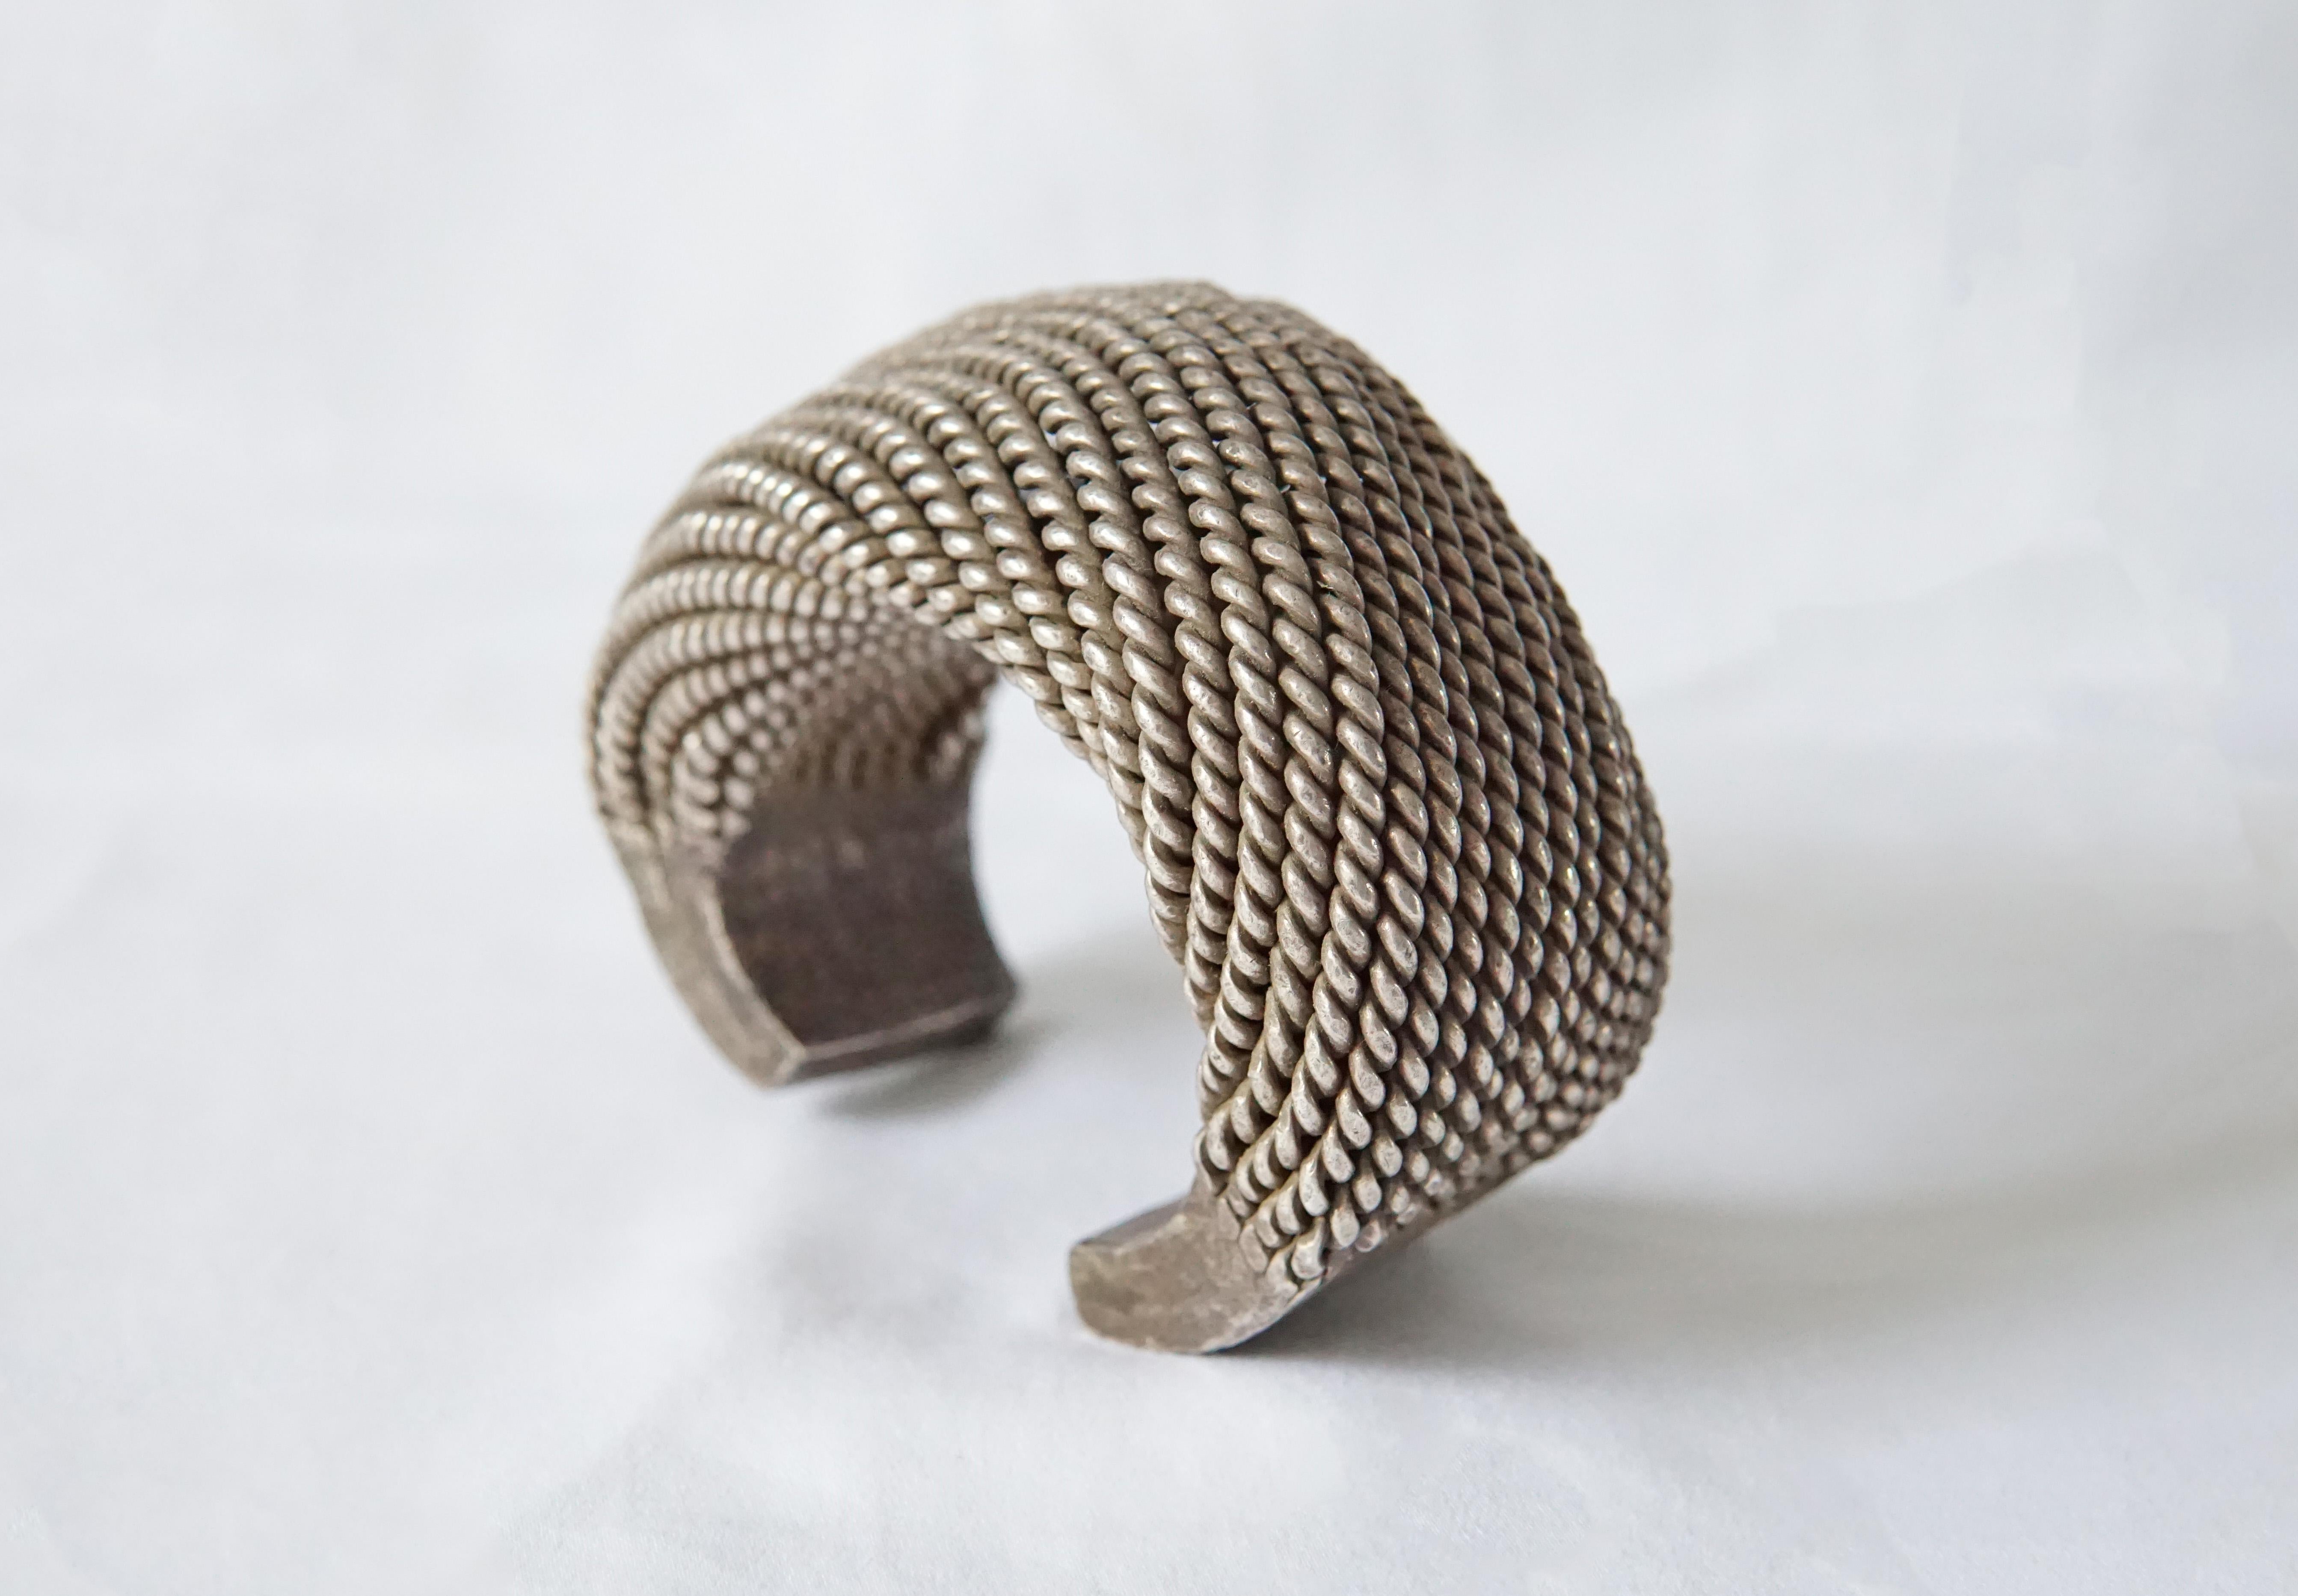 Ein außergewöhnlich großes gewebtes Silberarmband des Akha-Stammes mit Spiralmuster. Dieses Stammesarmband umfasst traditionelle Silberschmiedetechniken des Hill Tribe, bei denen jeder Silberstrang von Hand gefertigt und gewebt wird. Das Armband ist